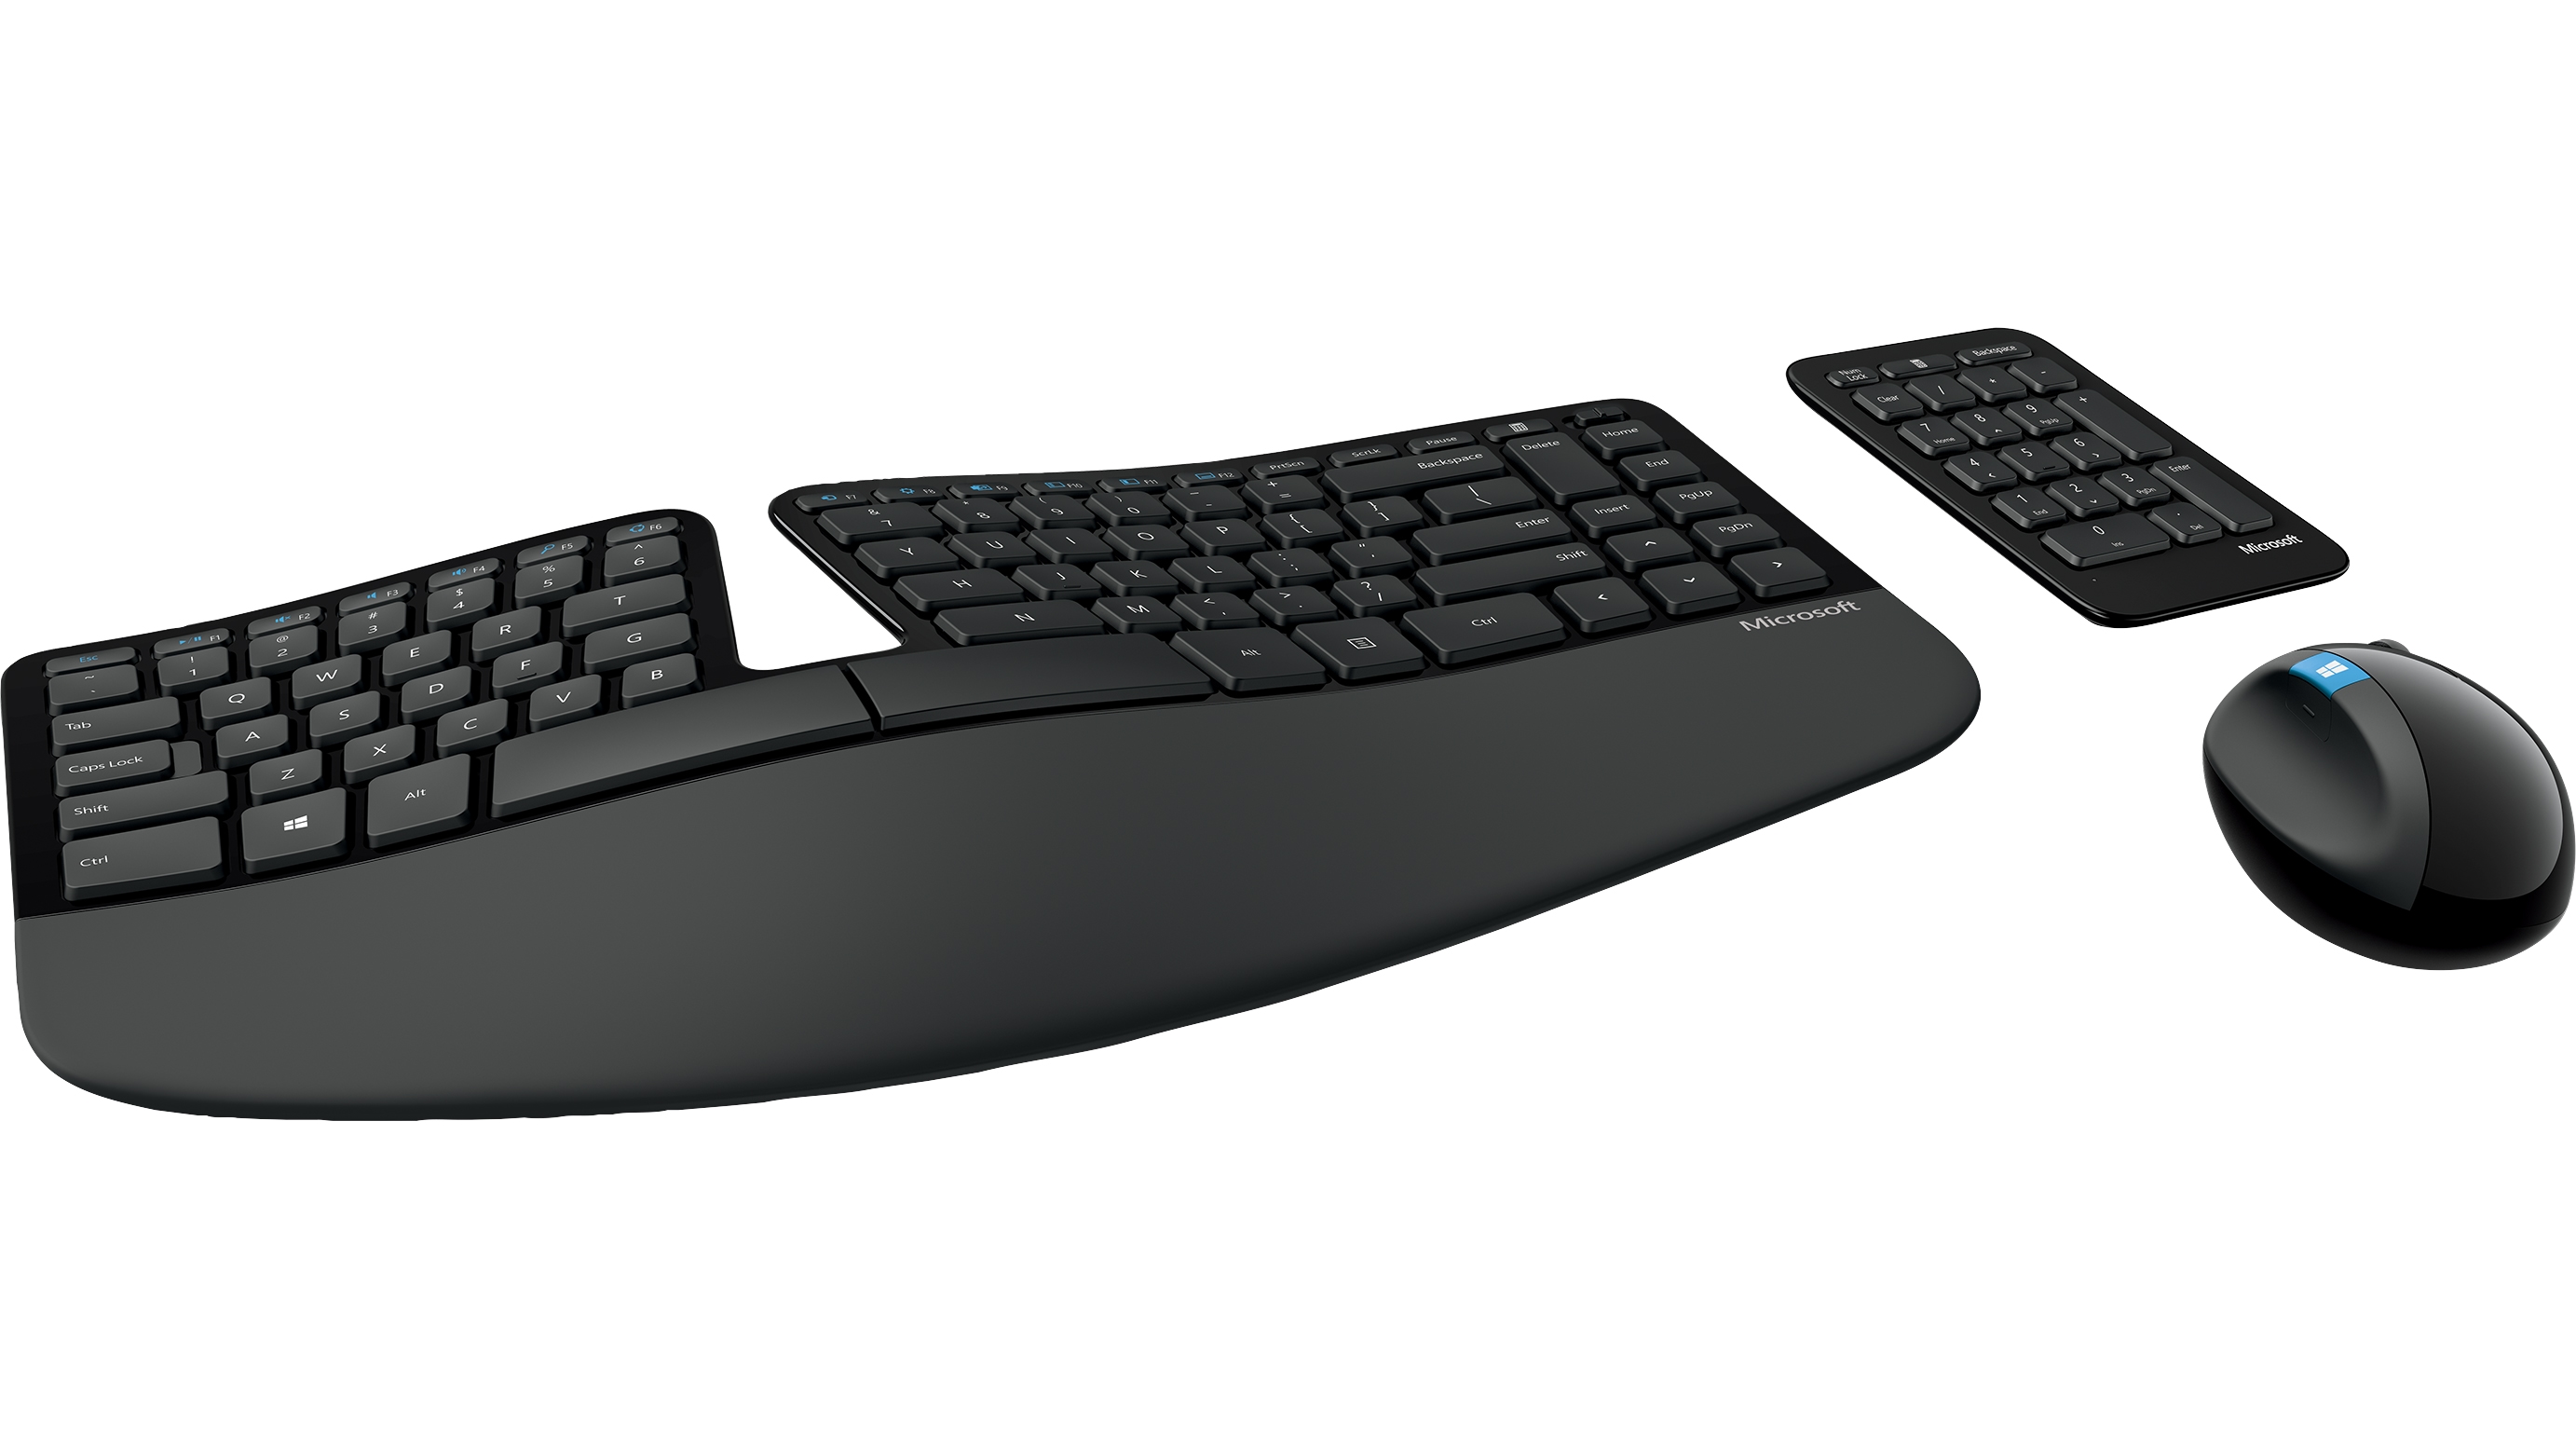 Nuevo teclado ergonómico para Windows 8 - El blog de Windows para